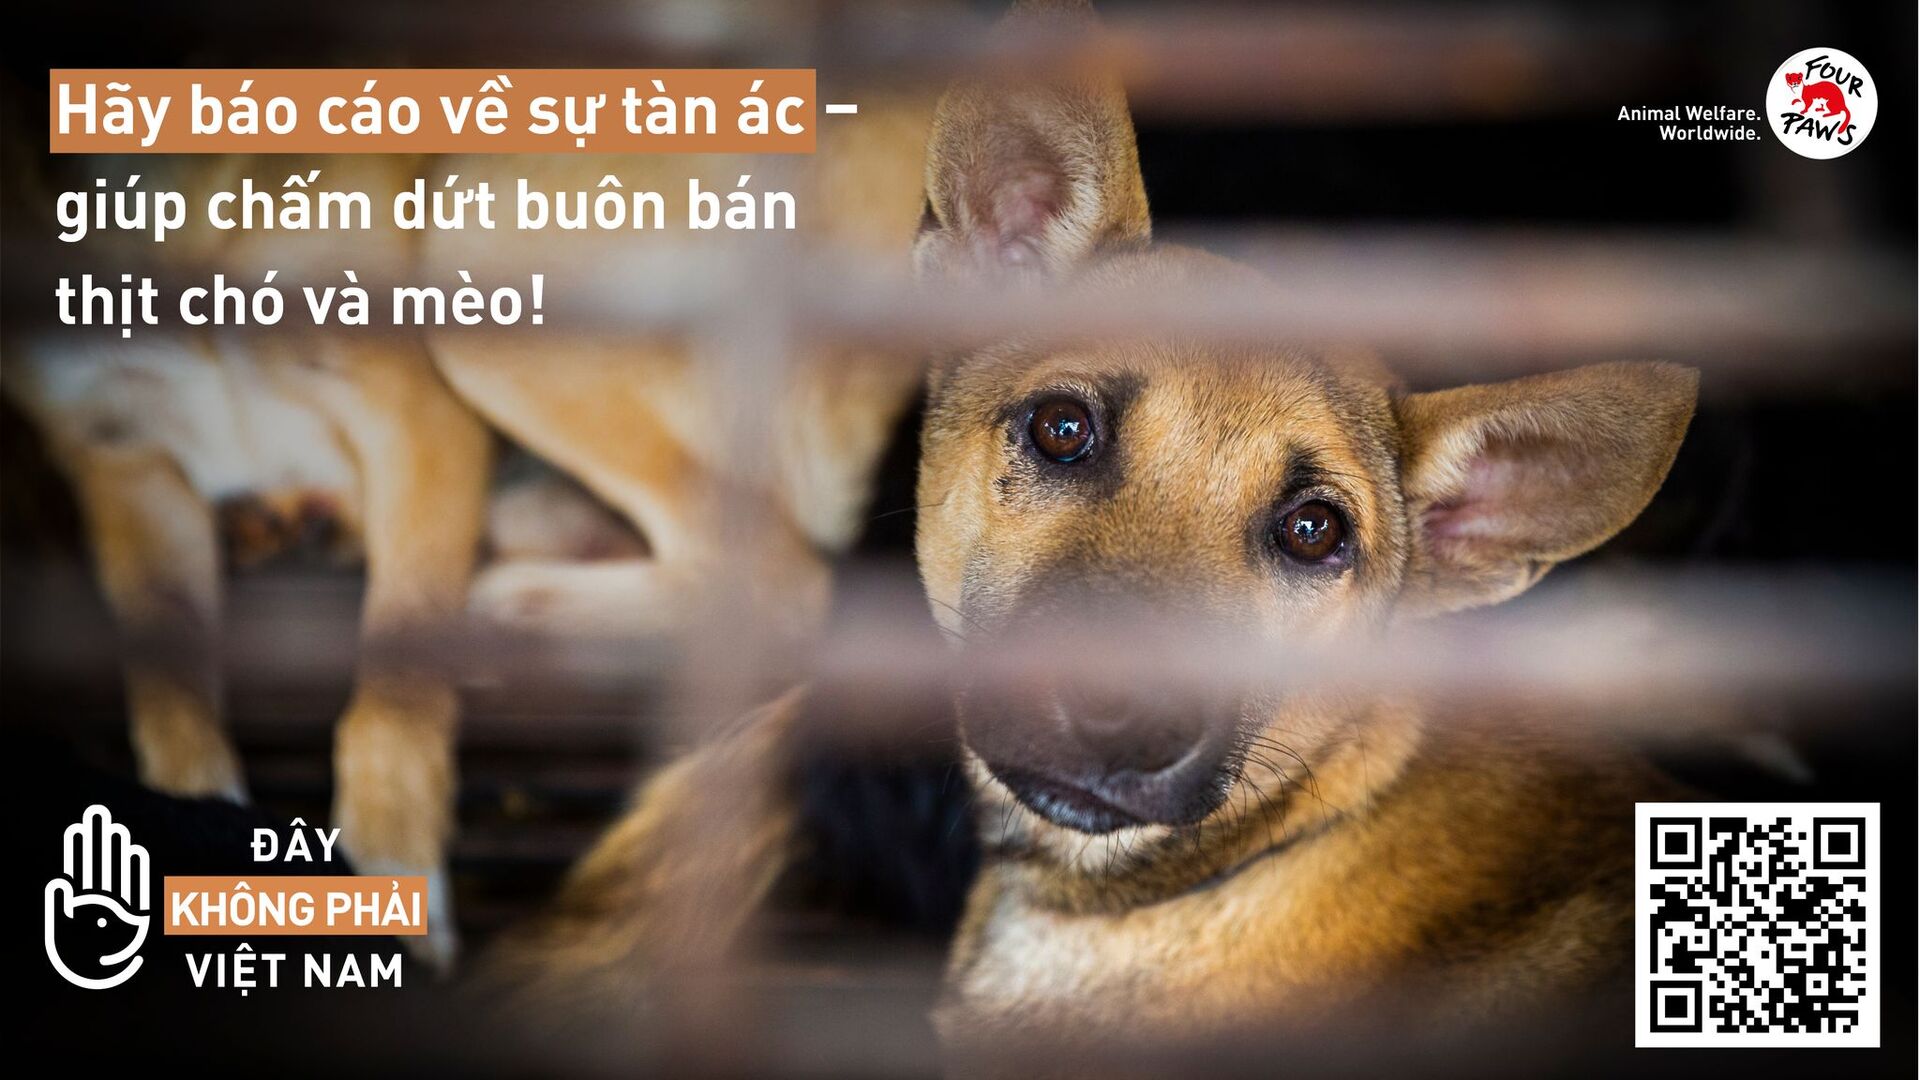 Chỉ trong vòng 2 tháng triển khai, đã có hơn 150 báo cáo về hoạt động buôn bán, giết thịt hơn 2000 con chó, mèo... tại Quảng Nam, Đà Nẵng và một số tỉnh thành trên cả nước